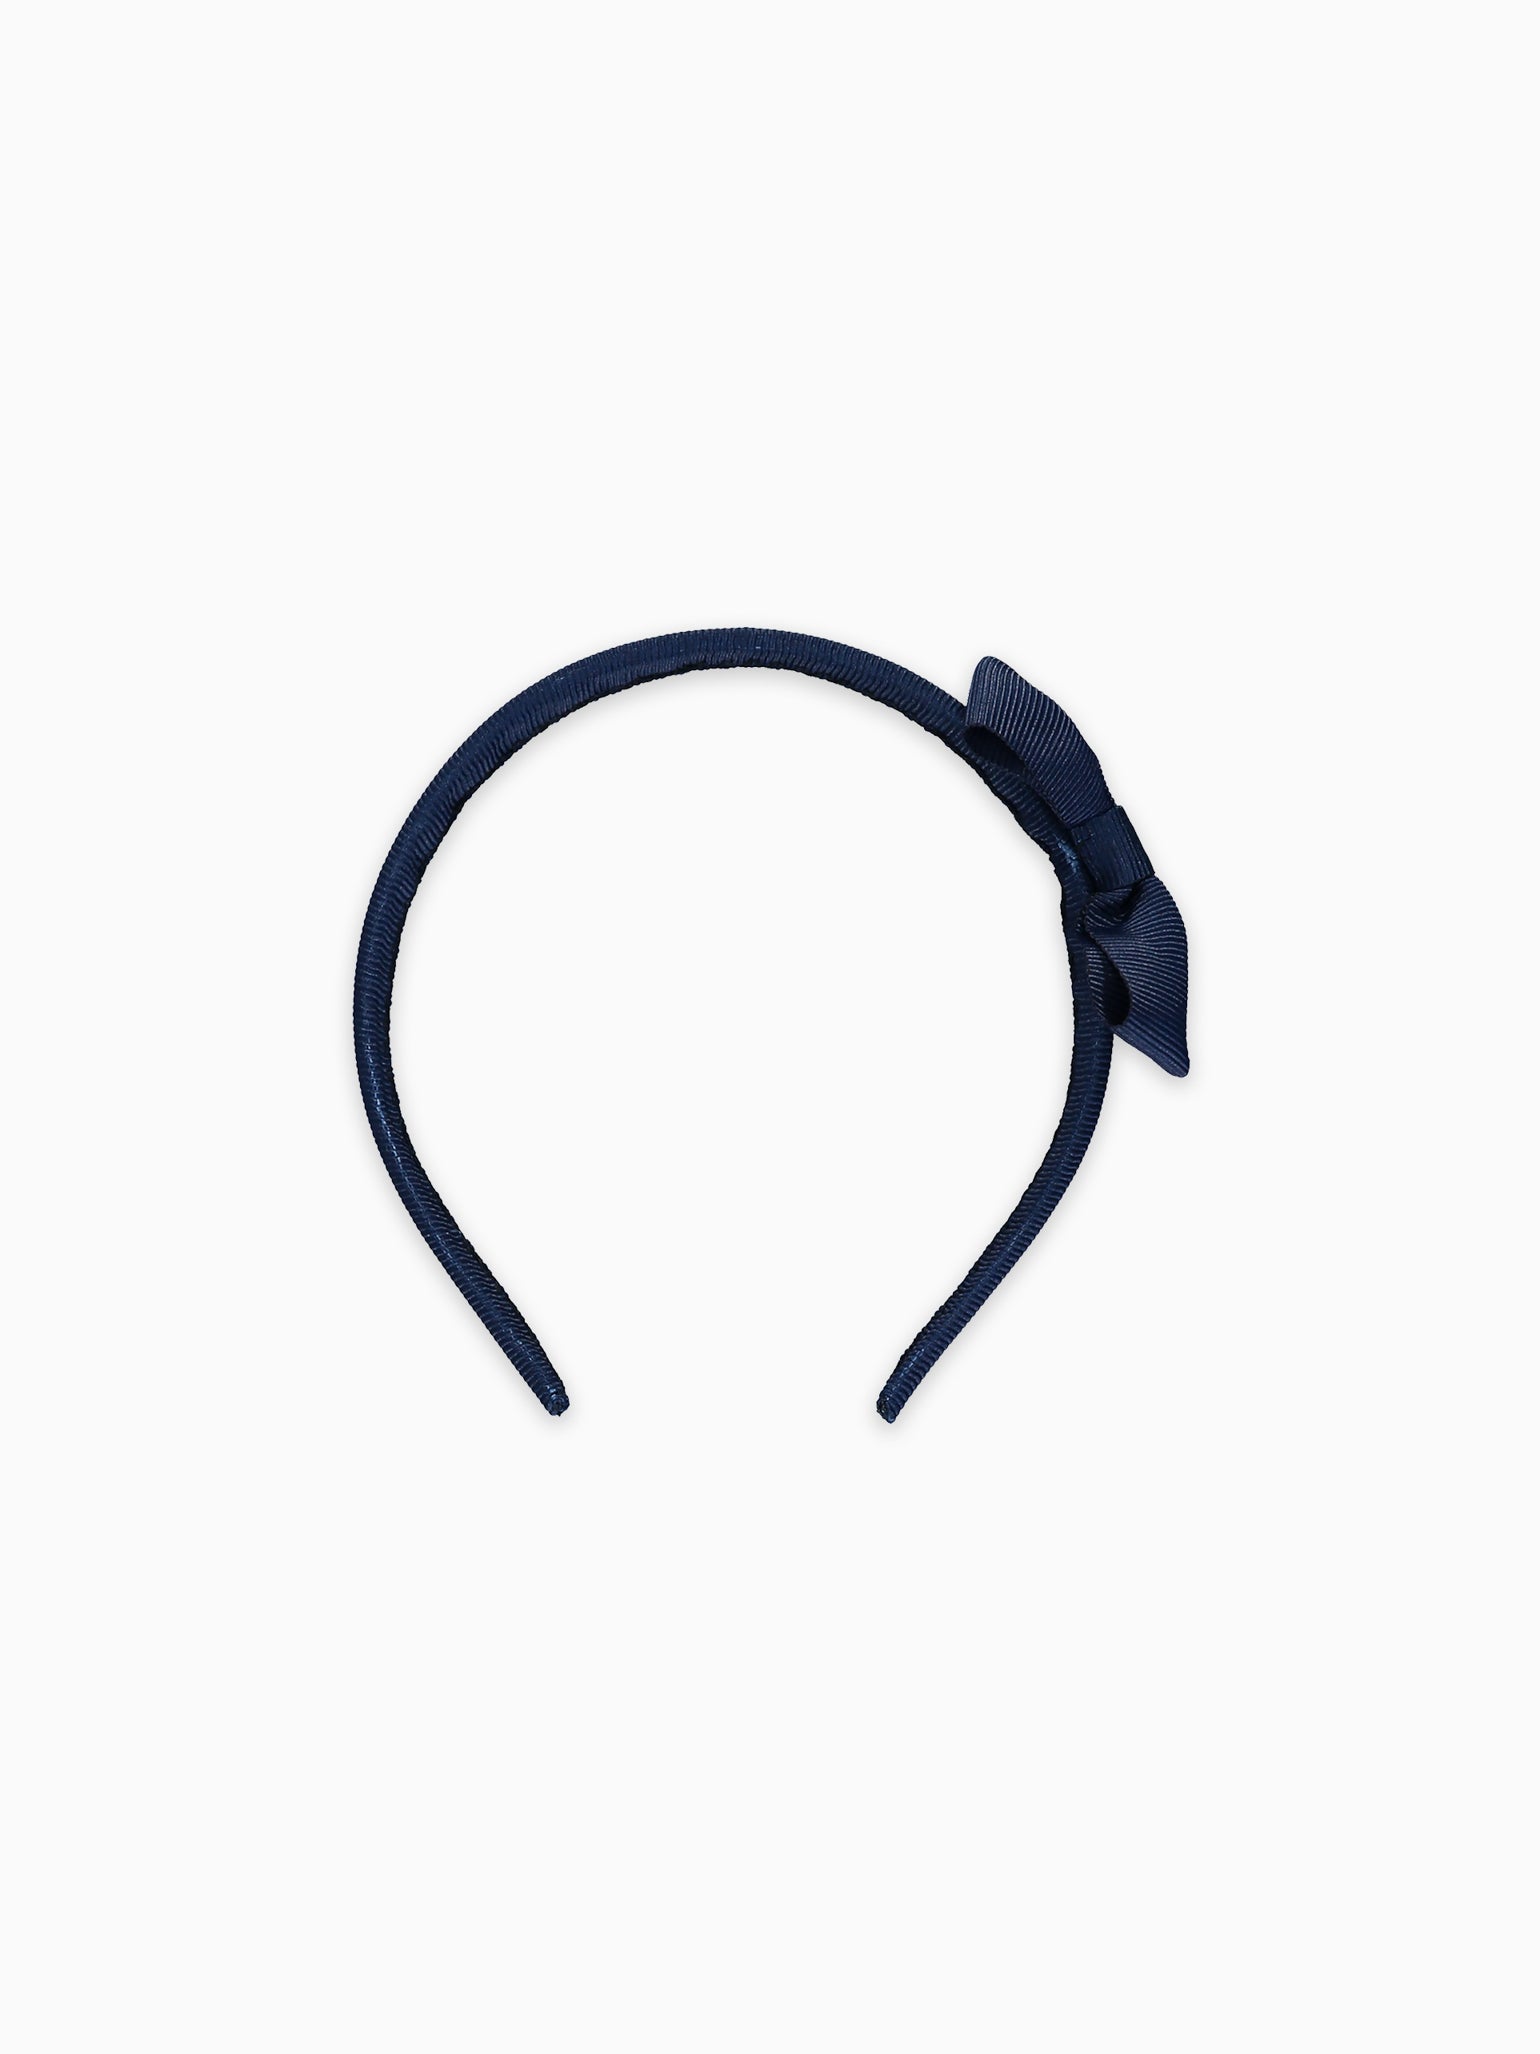 Navy Blue Small Bow Girl Headband